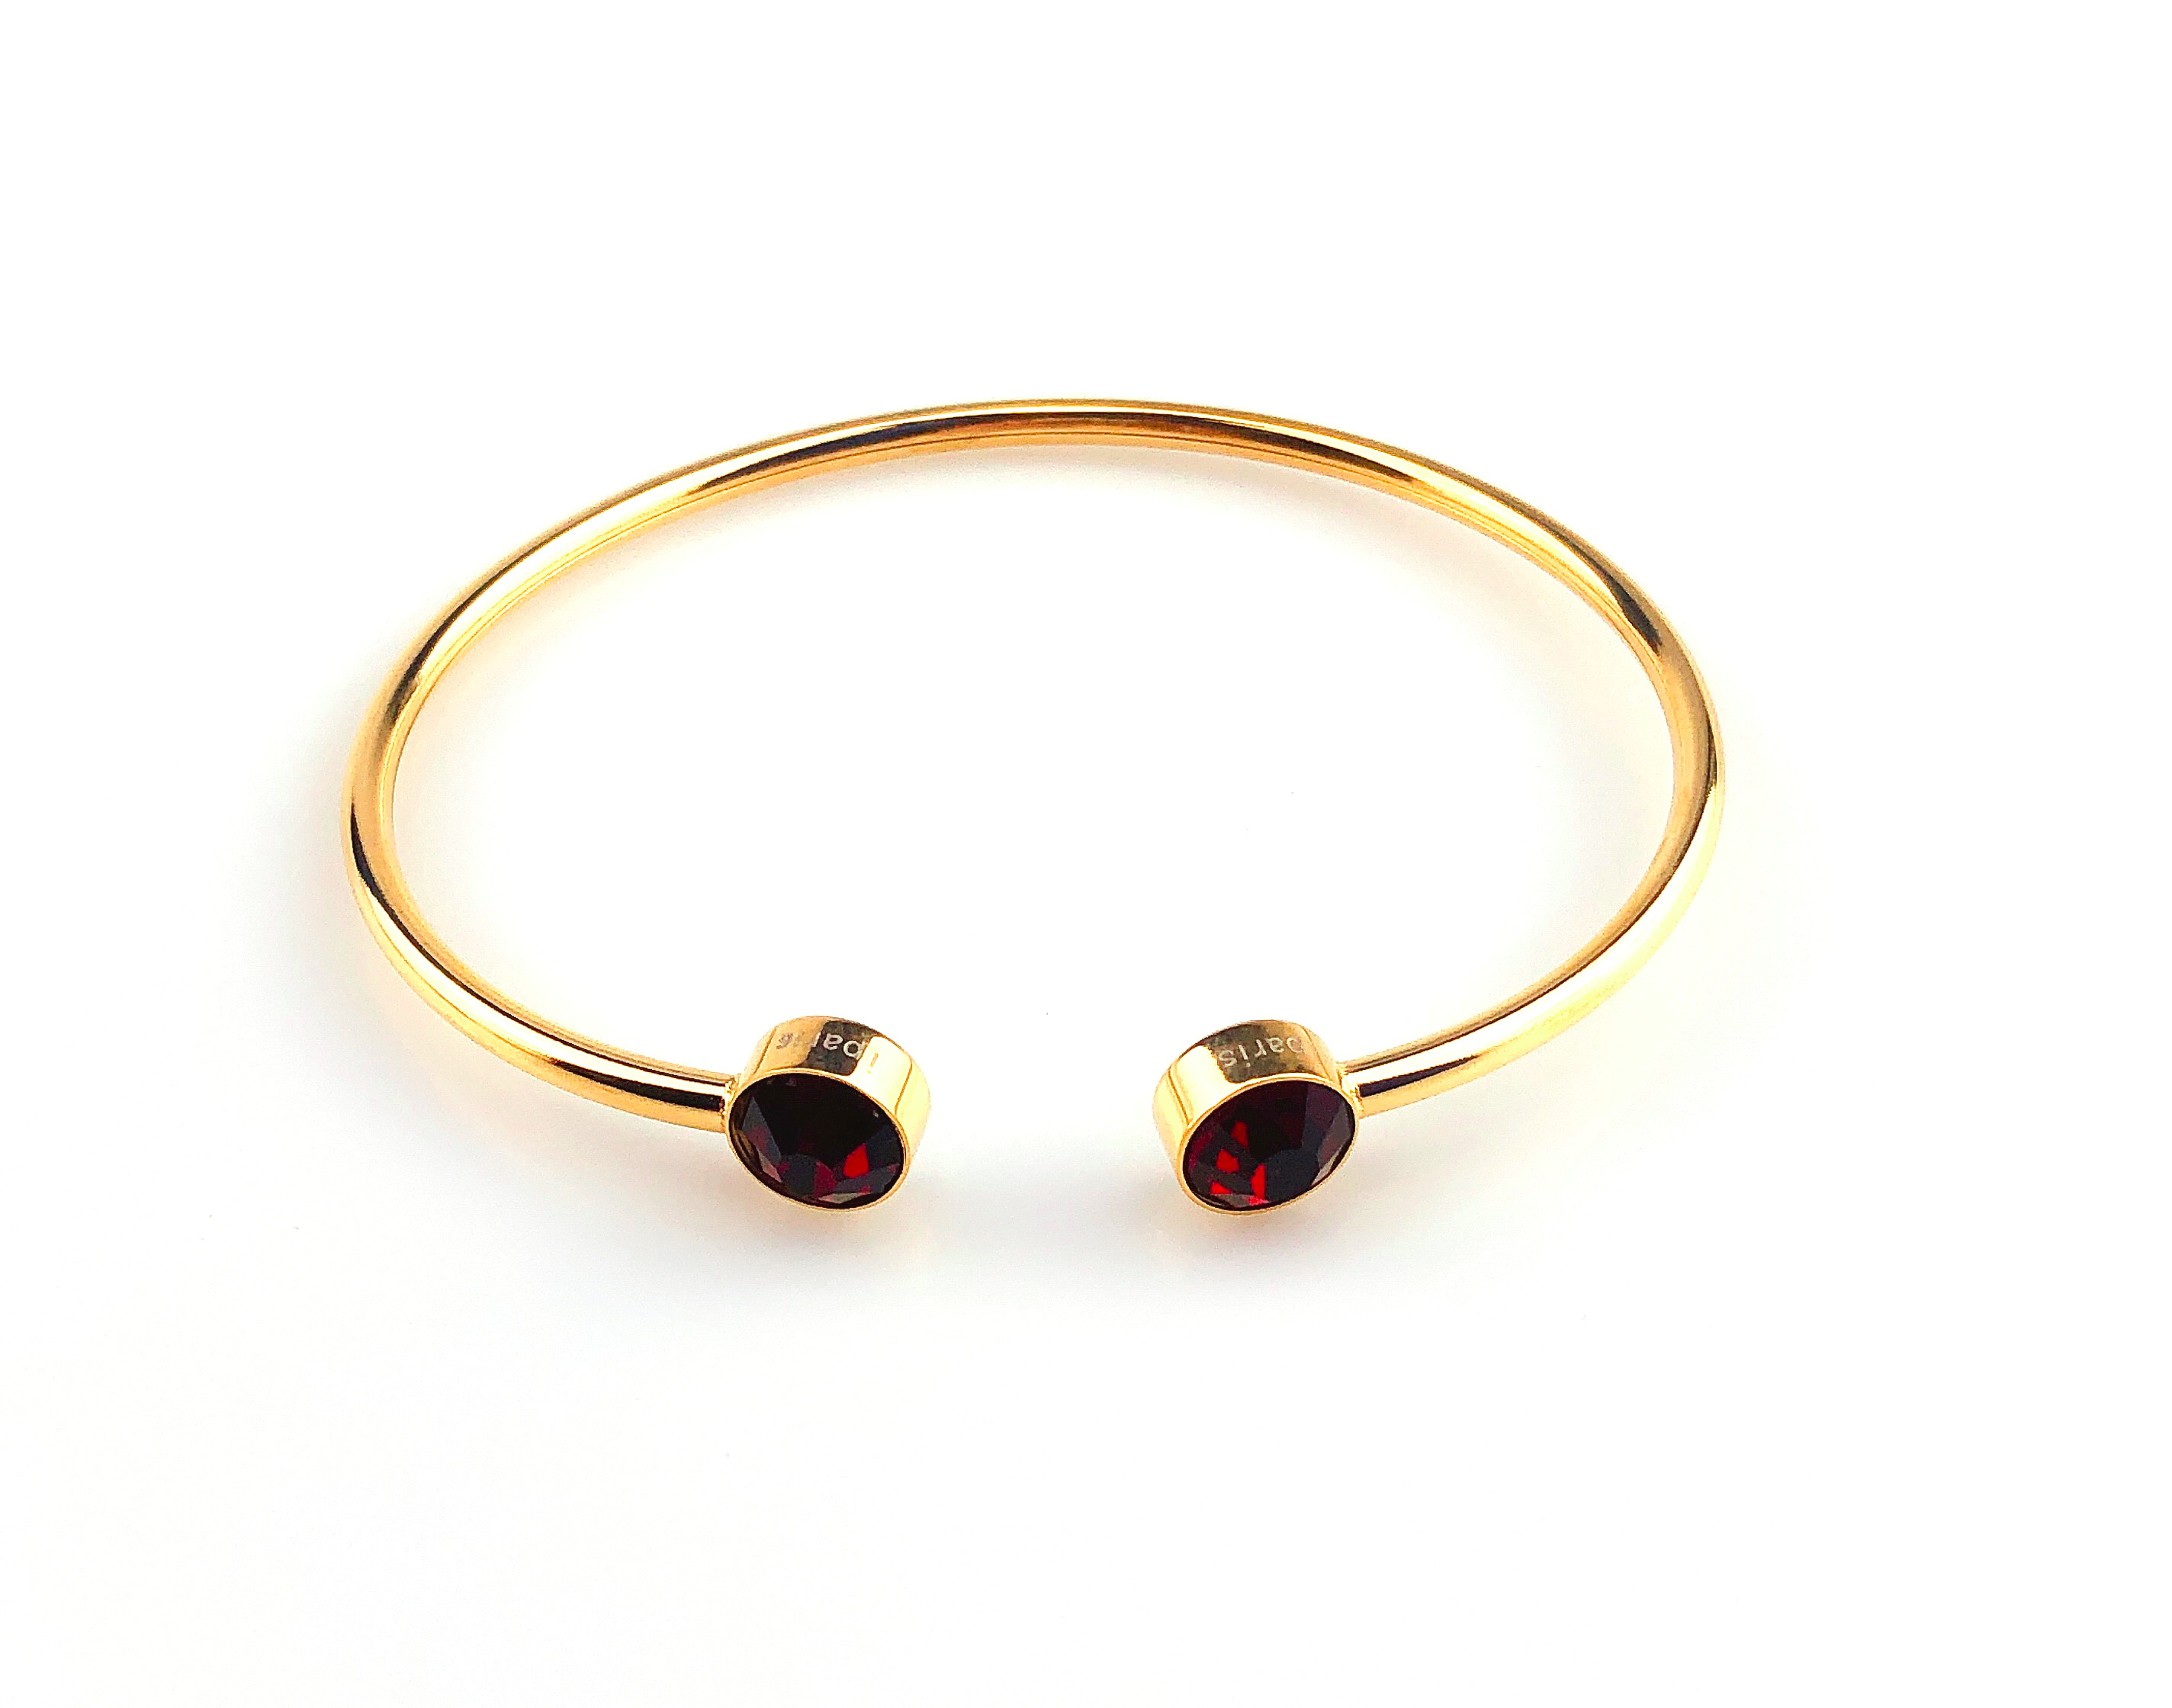 Bonjour Jewelers 1 Ct Round Garnet Stackable Bangle Bracelet In 24k Gold